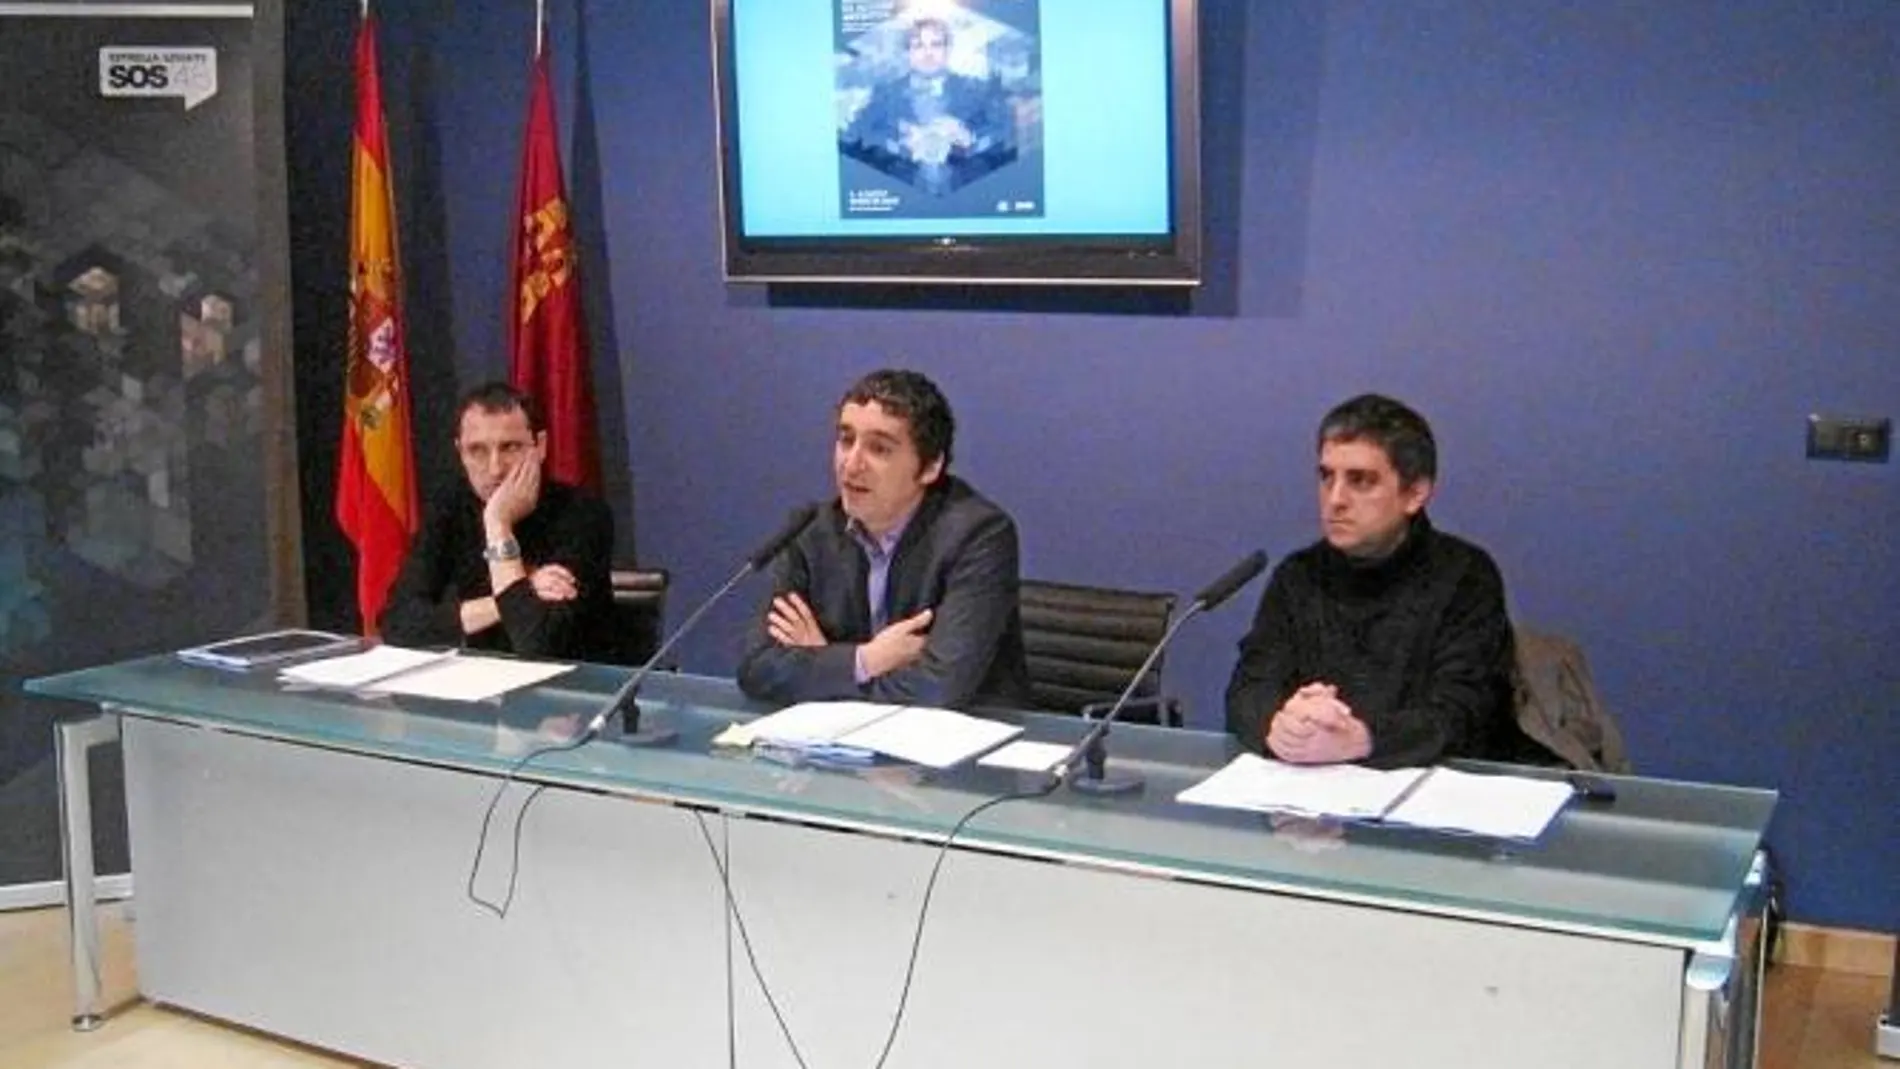 Albert Salmerón, Pedro Alberto Cruz y Jordi Costa presentaron las novedades y confirmaciones del cartel del próximo SOS 4.8 que tendrá lugar el fin de semana del 4 y 5 de mayo